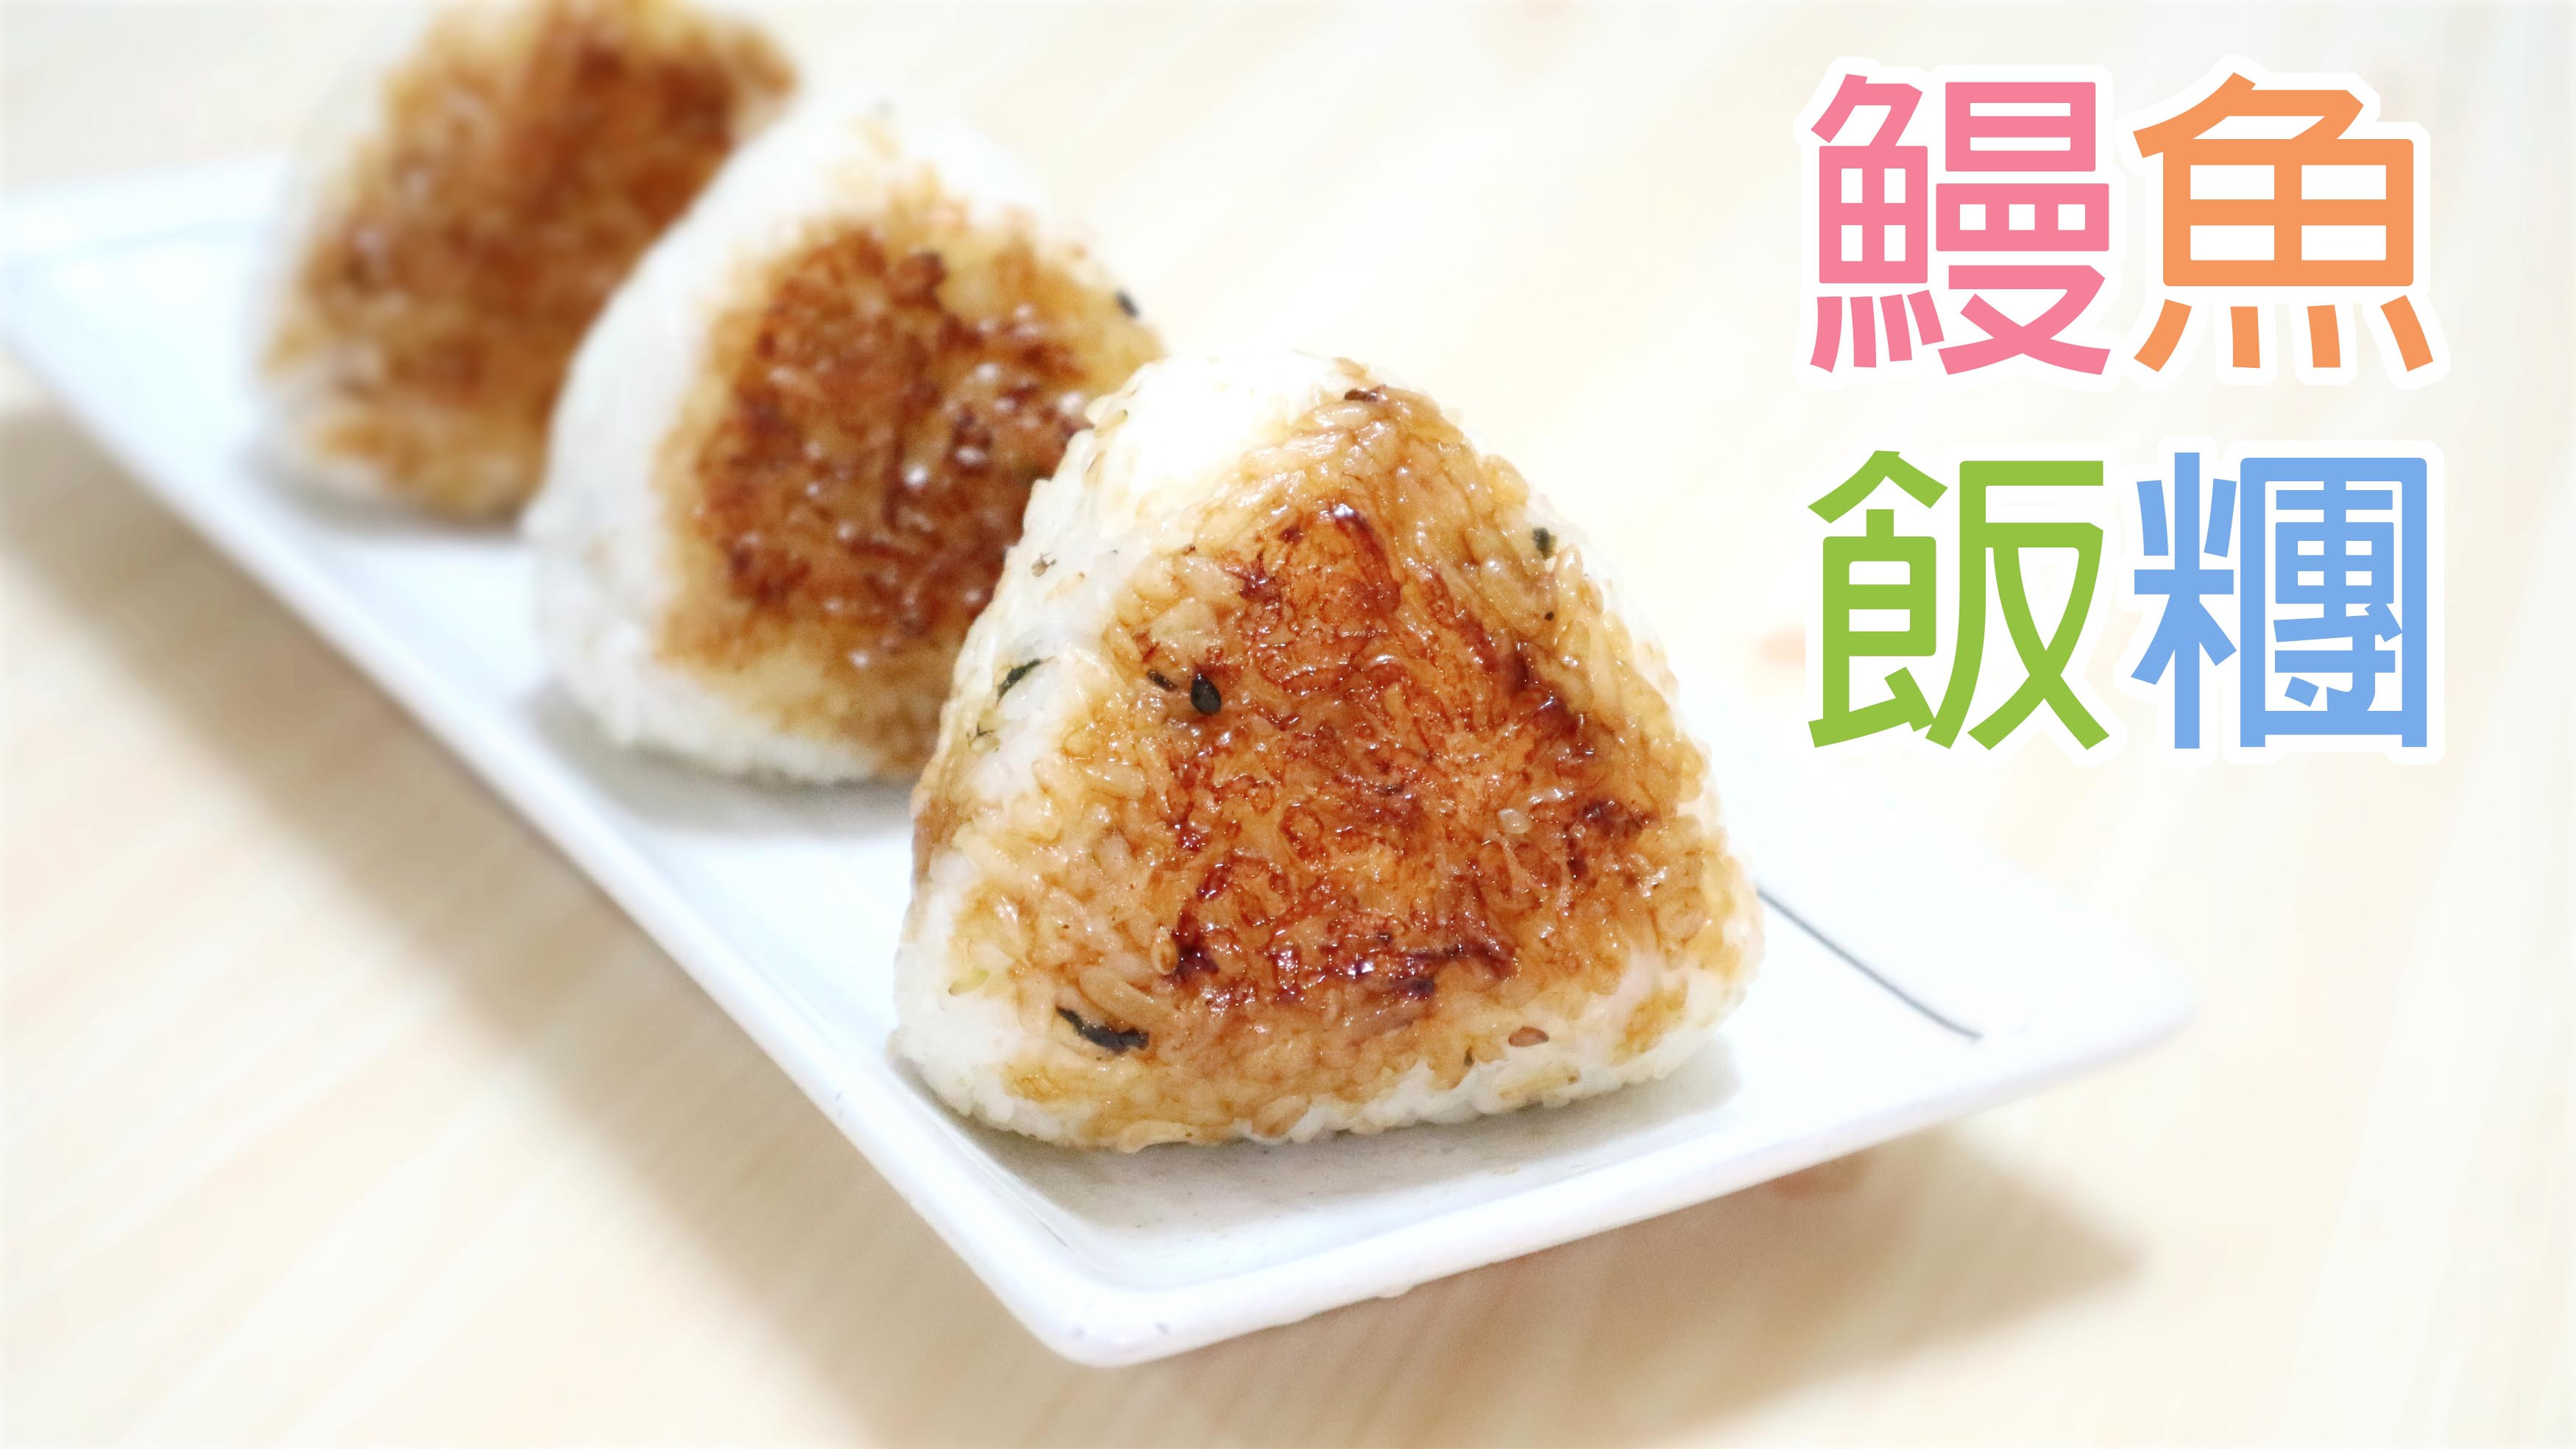 鰻魚燒飯糰 Unagi Onigiri